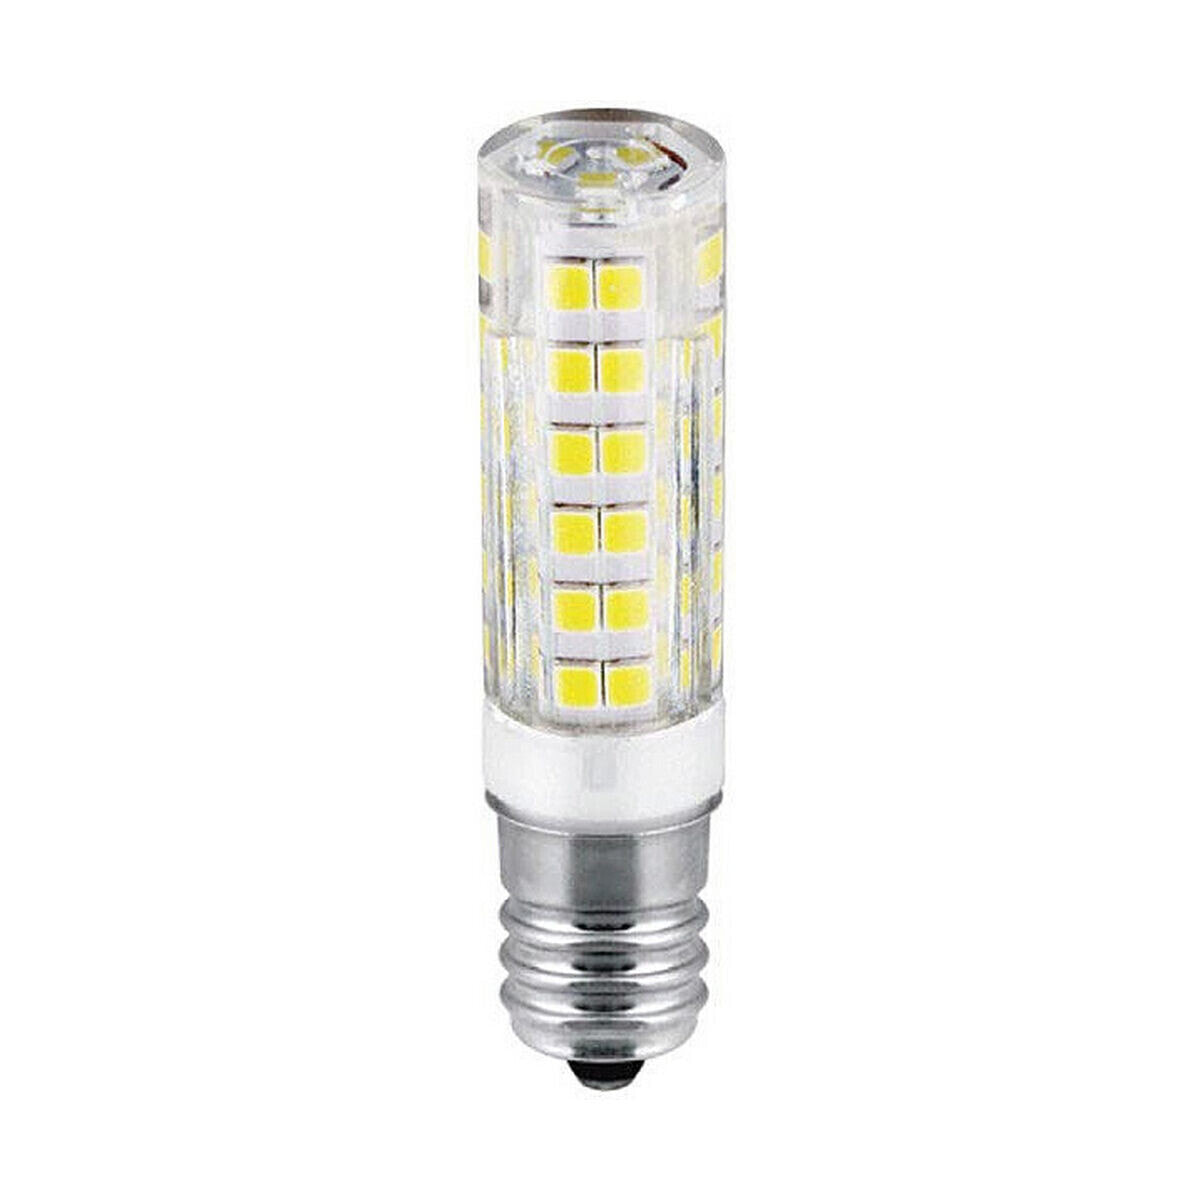 LED lamp EDM Tubular F 4,5 W E14 450 lm Ø 1,6 x 6,6 cm (3200 K)